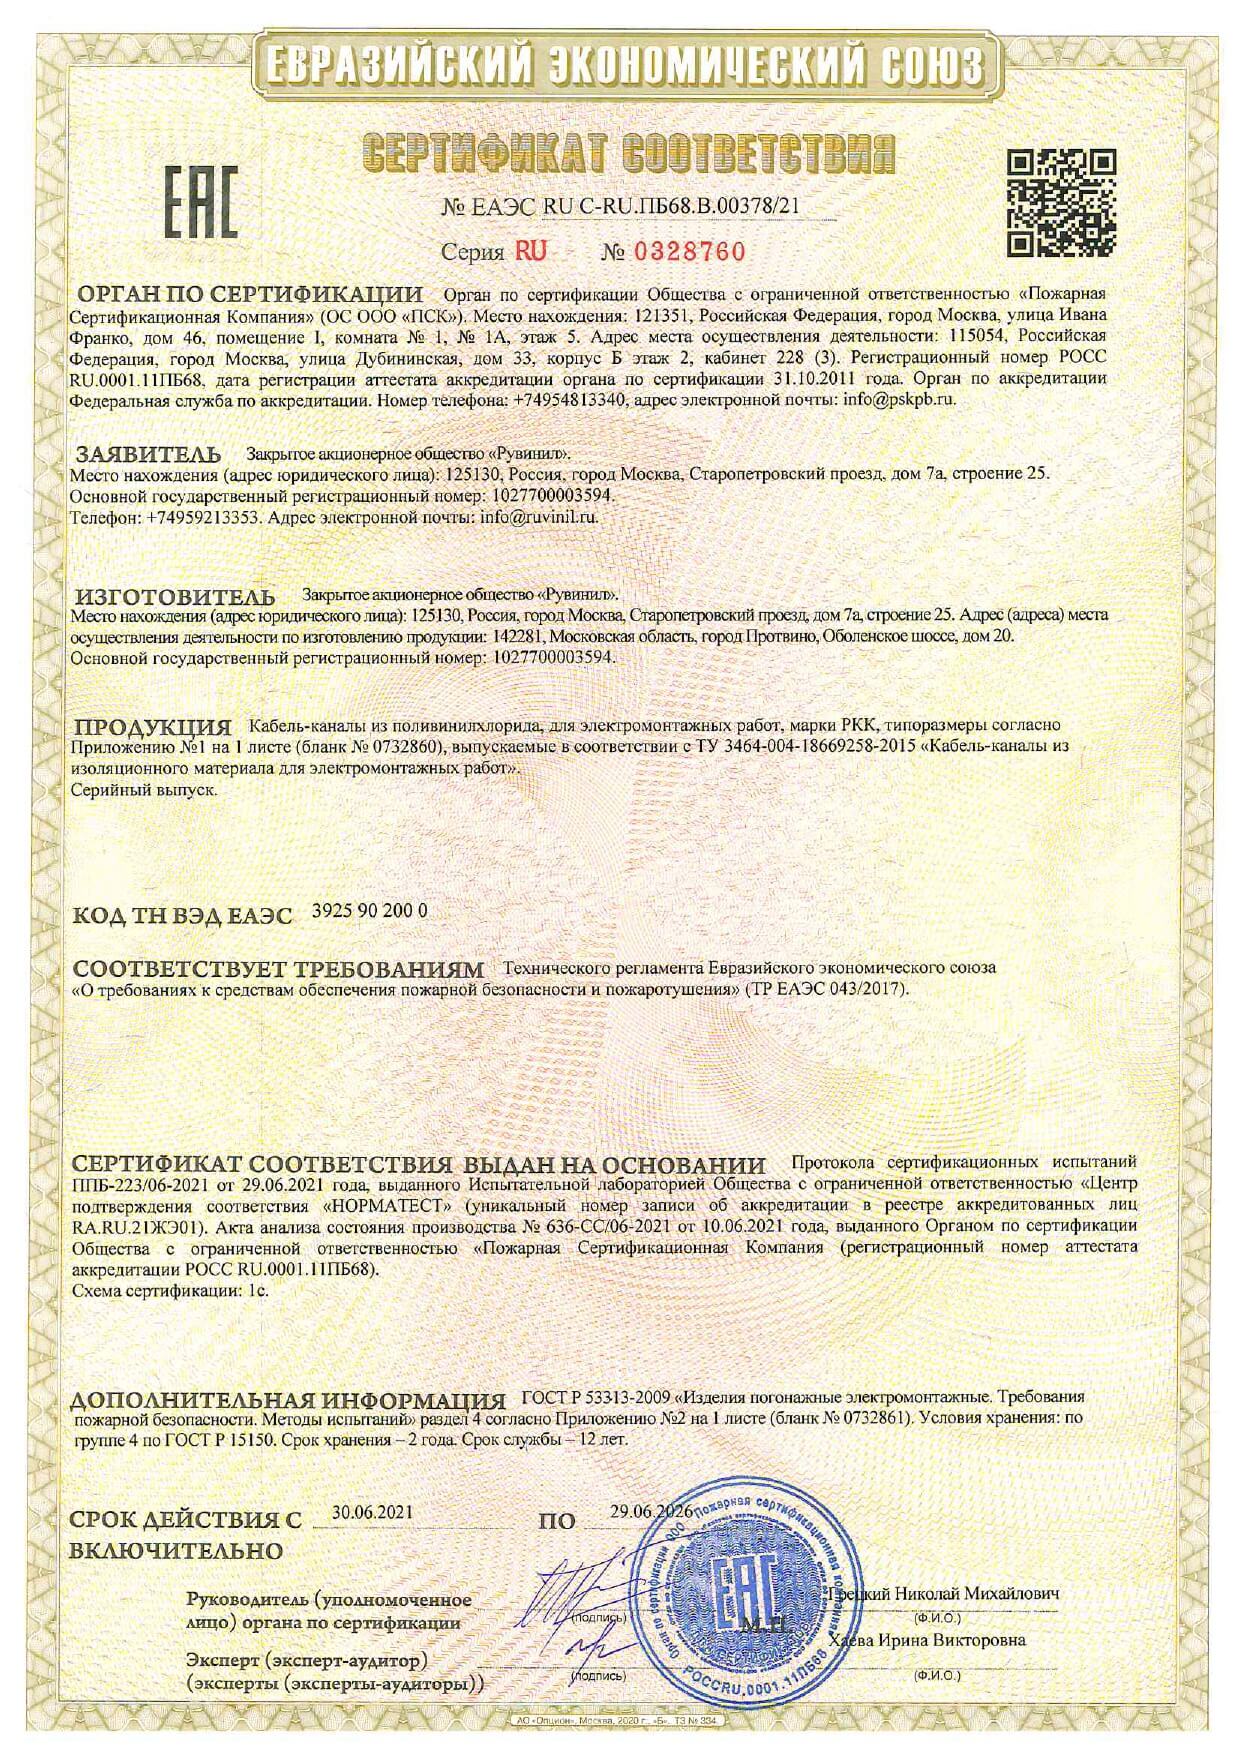 Сертификат соответствия Кабель-каналов Рувинил